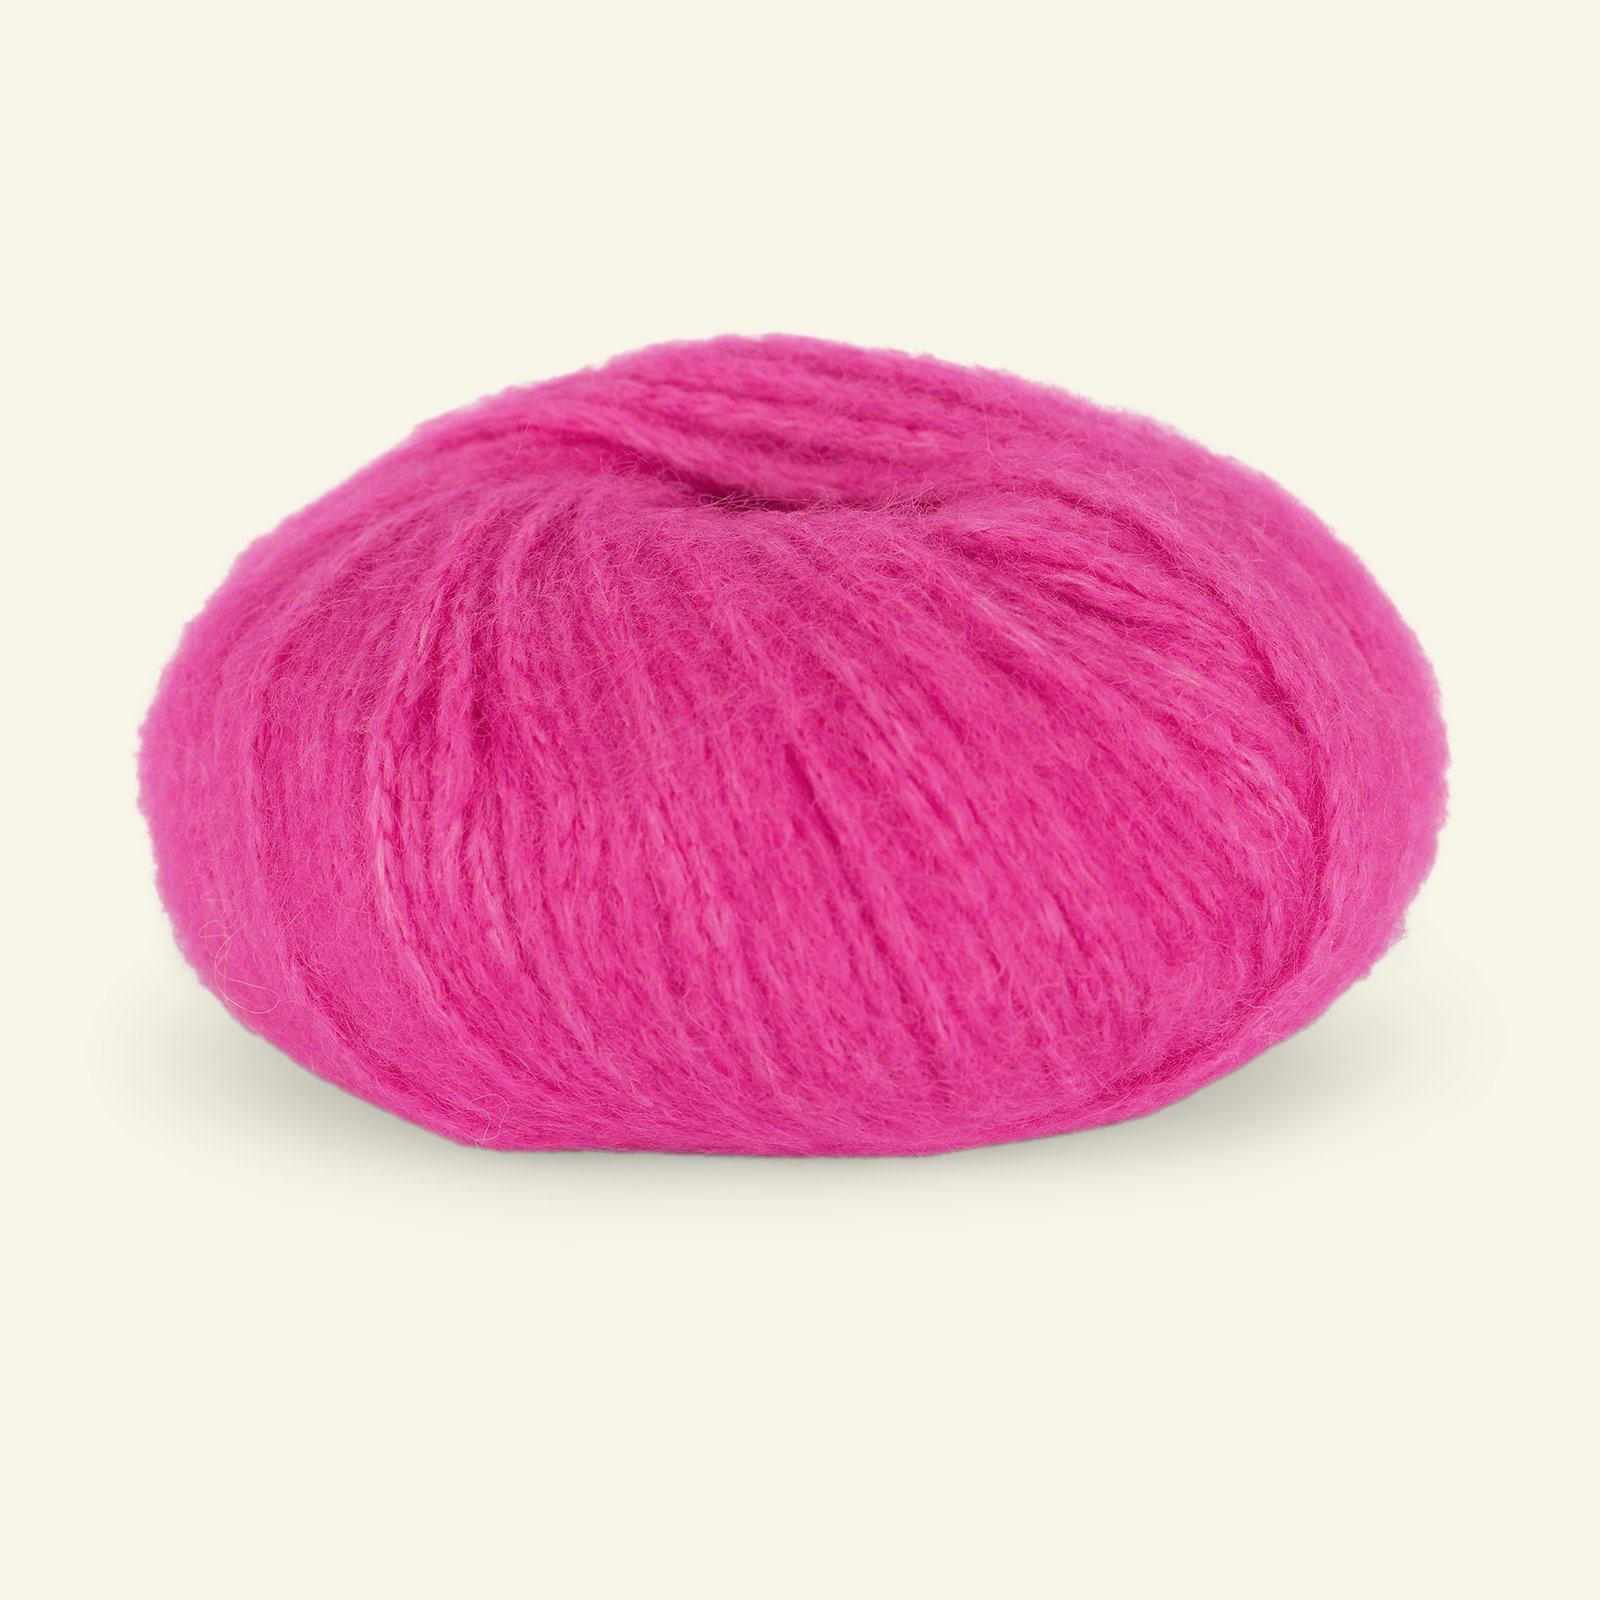 Du Store Alpakka, alpaca mixed yarn "Pus", pink (4061) 90000741_pack_b